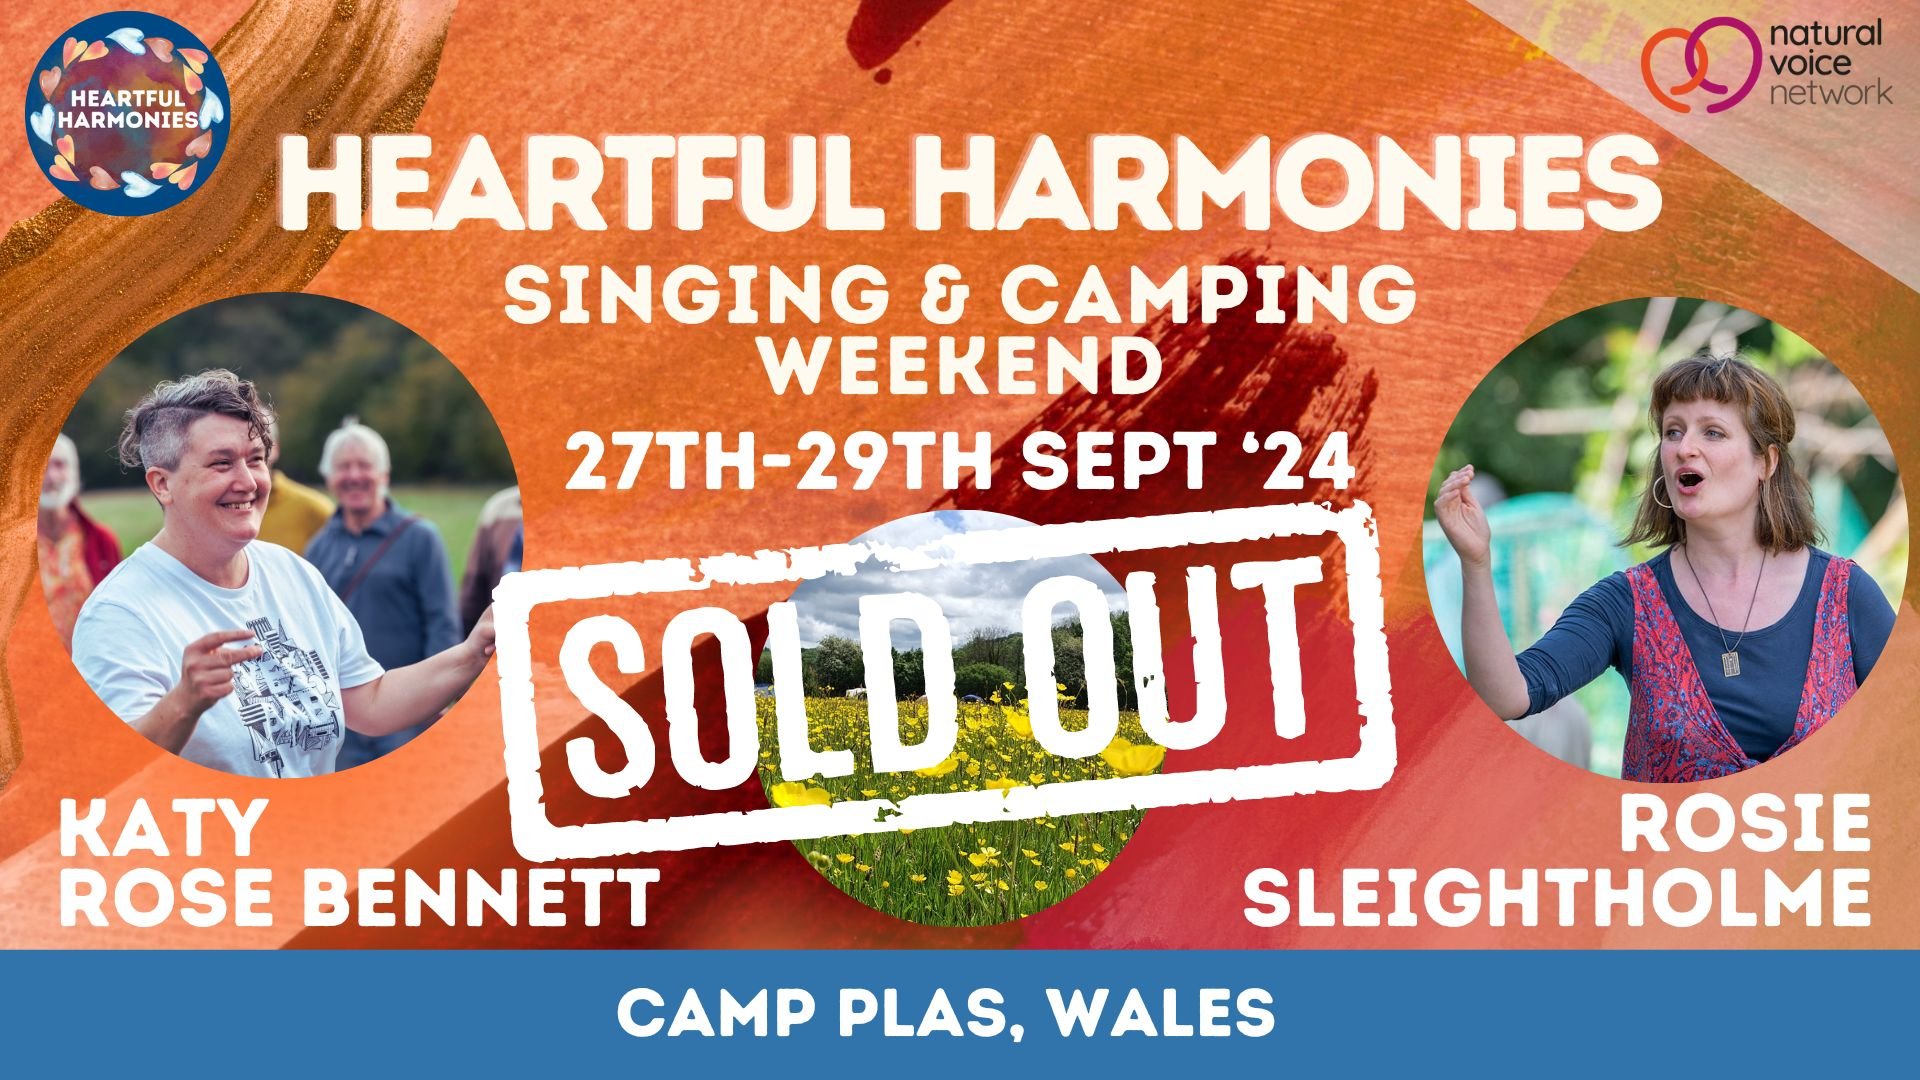 Heartful Harmonies Singing & Camping Weekend with Katy Rose Bennett & Rosie Sleightholme